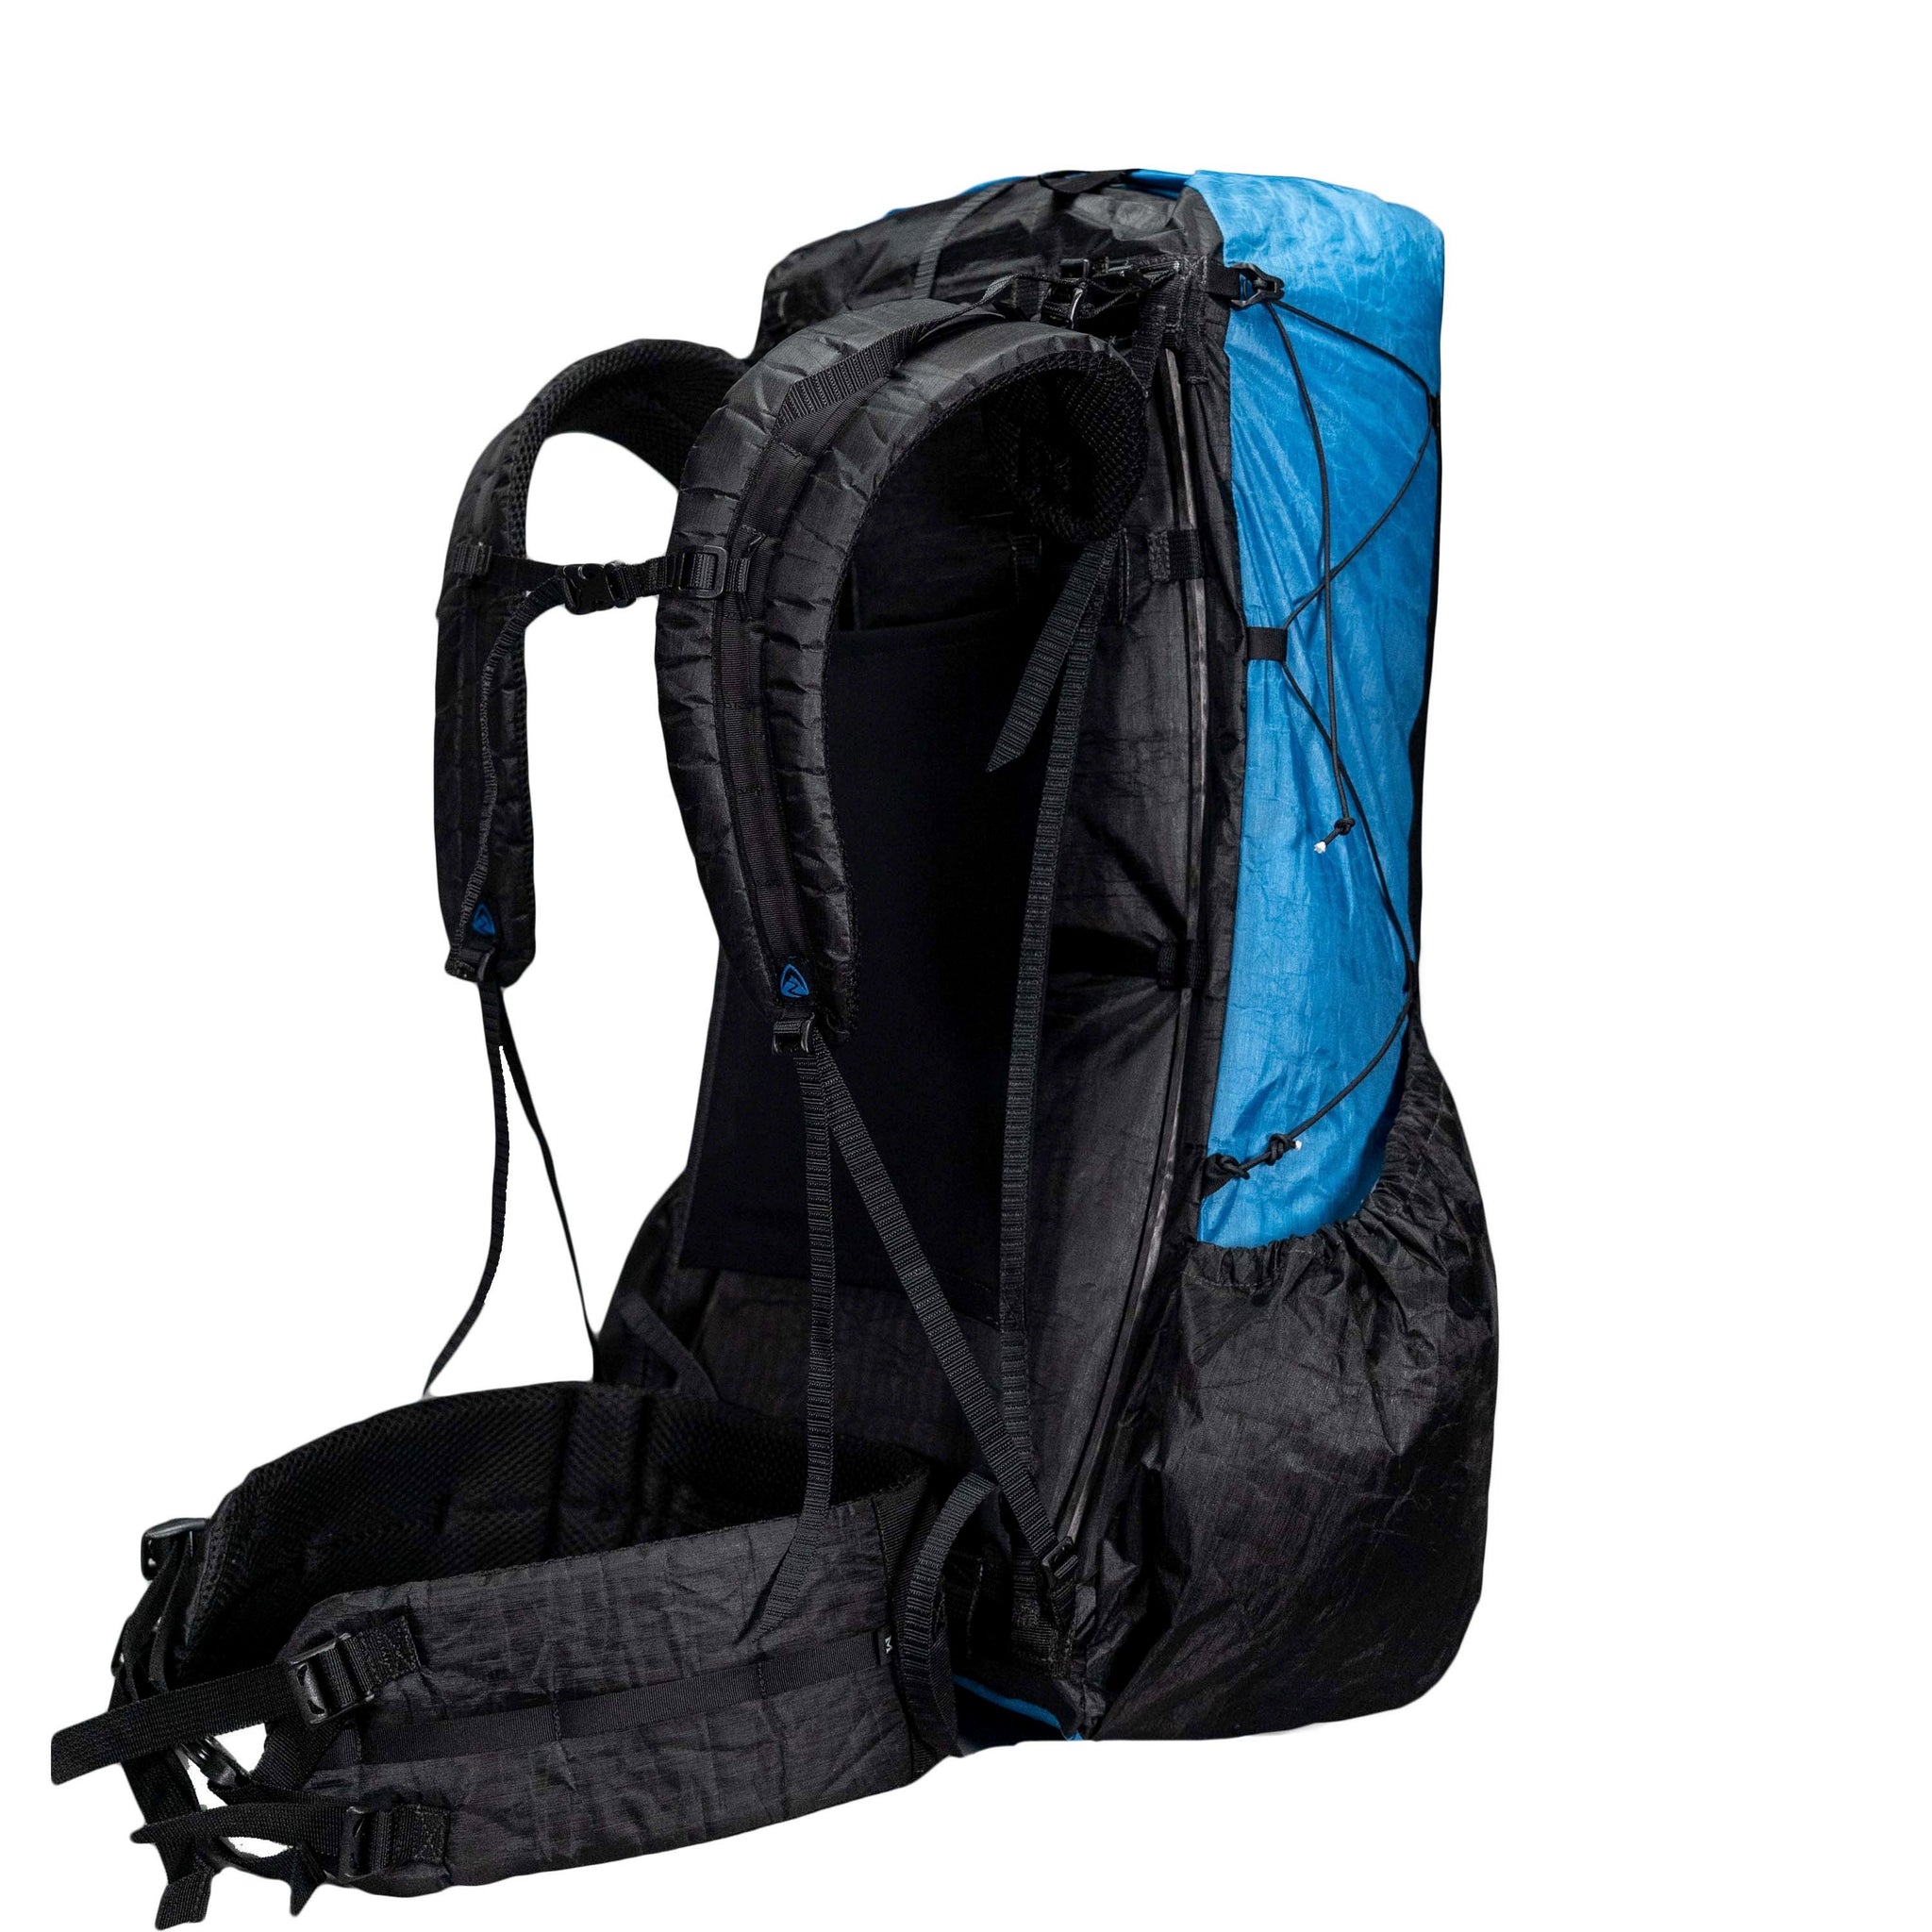 Zpacks  Backpack 50L Dcf  青色